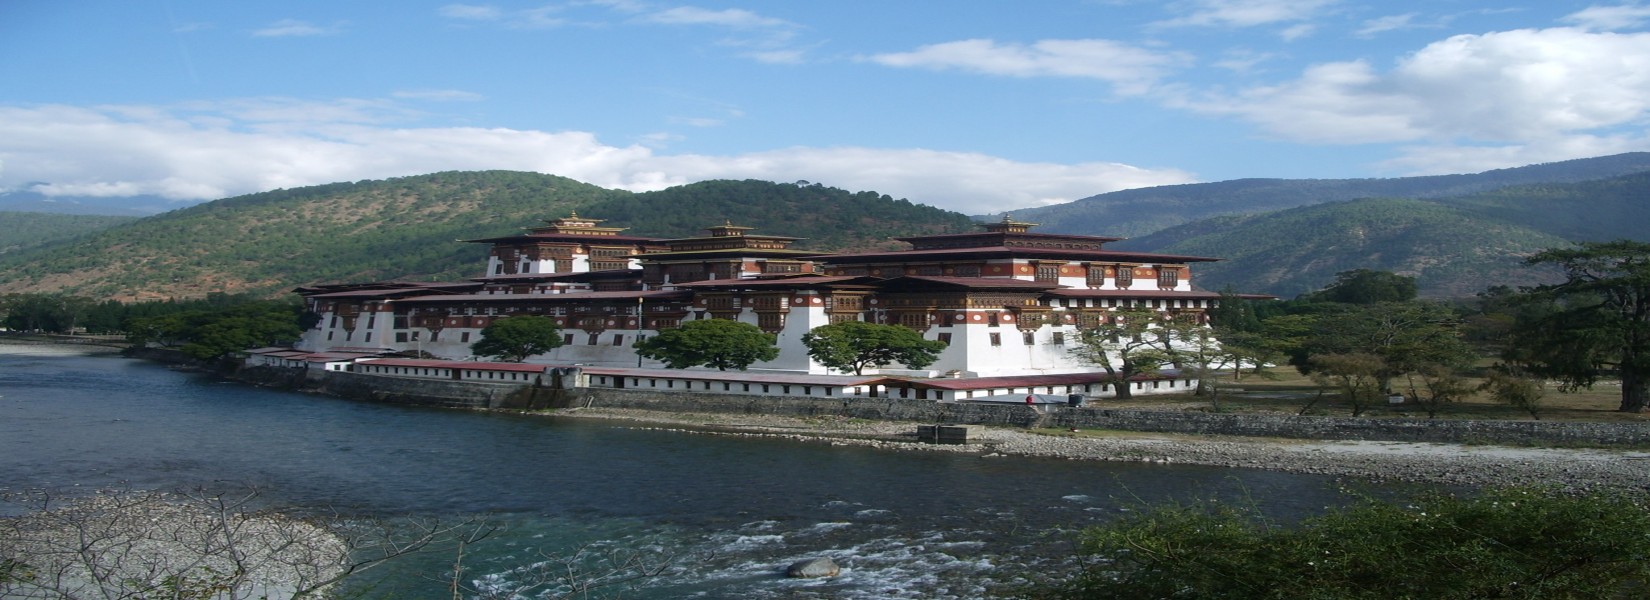 Short & Sweet Bhutan Tour - 4 Days